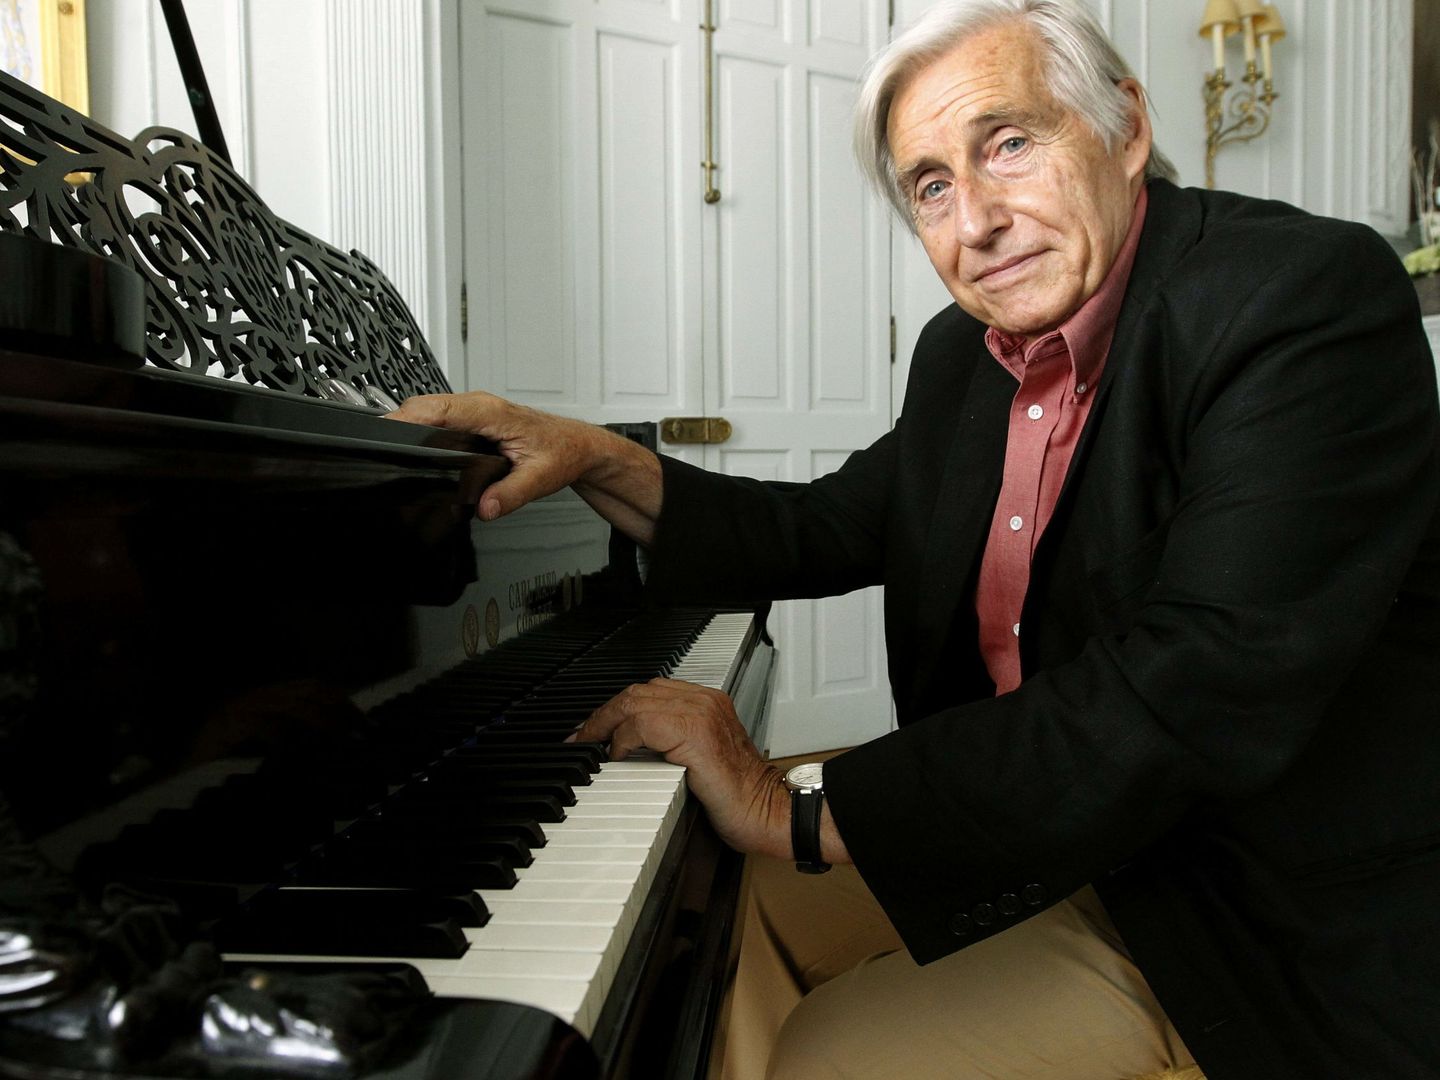 Joaquín Achúcarr al piano. (EFE)